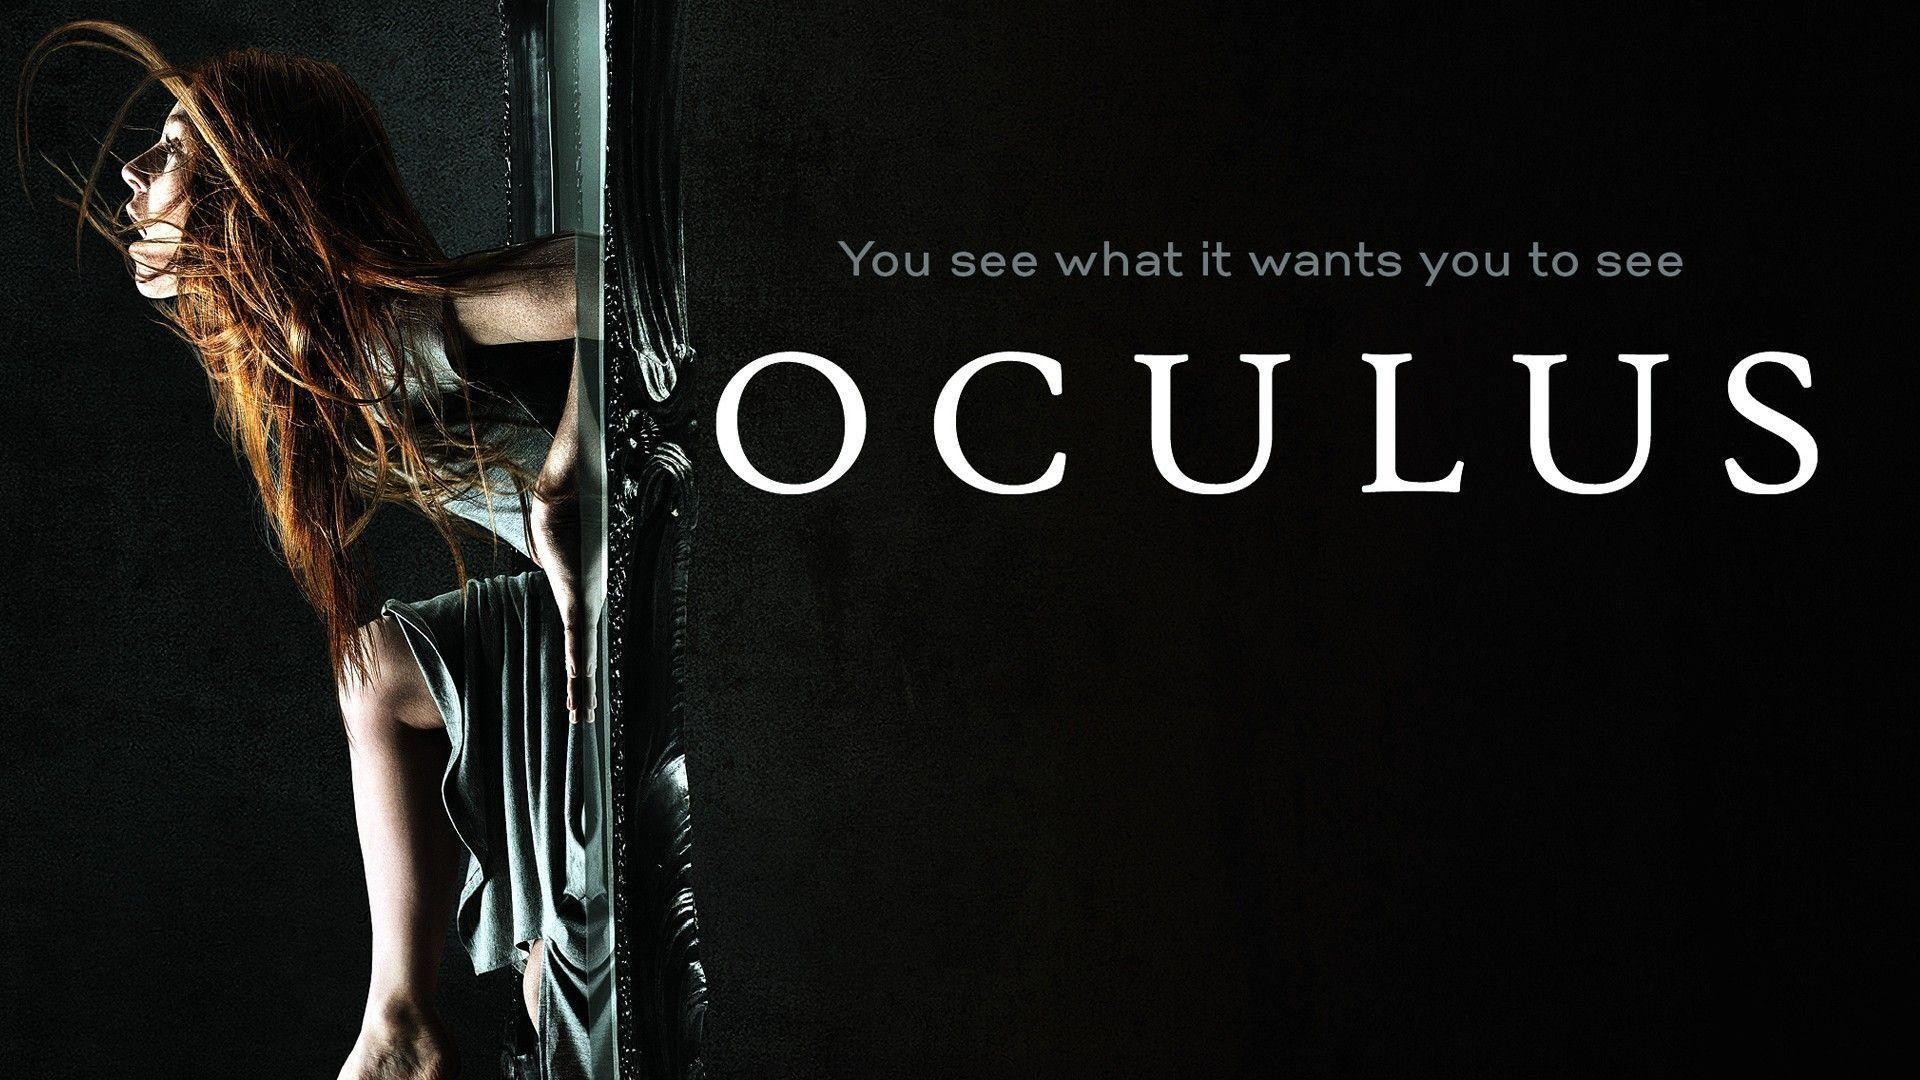 New Oculus 2014 Horror Movie Poster Wallpaper HD for Desktop .